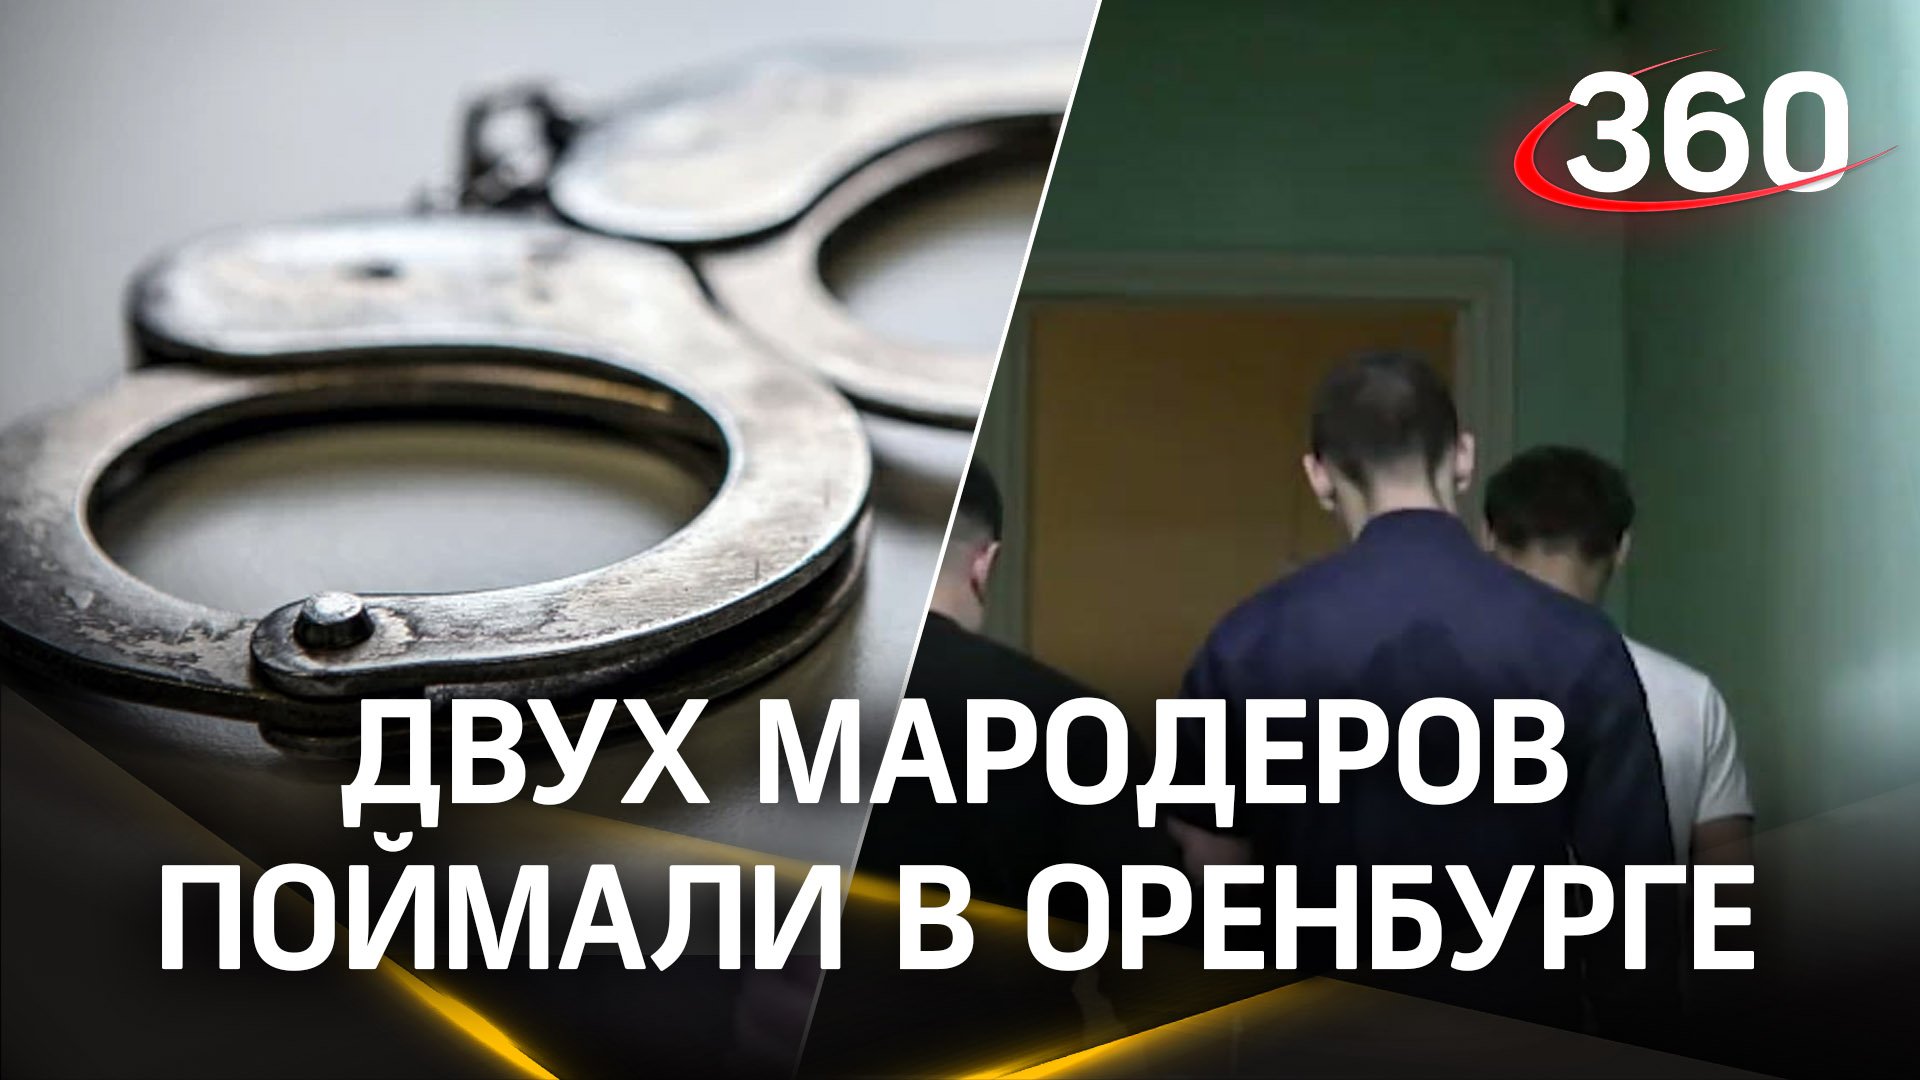 Вынесли музыкальный центр, саундбар и телевизоры - полиция Оренбурга задержала двух мародёров